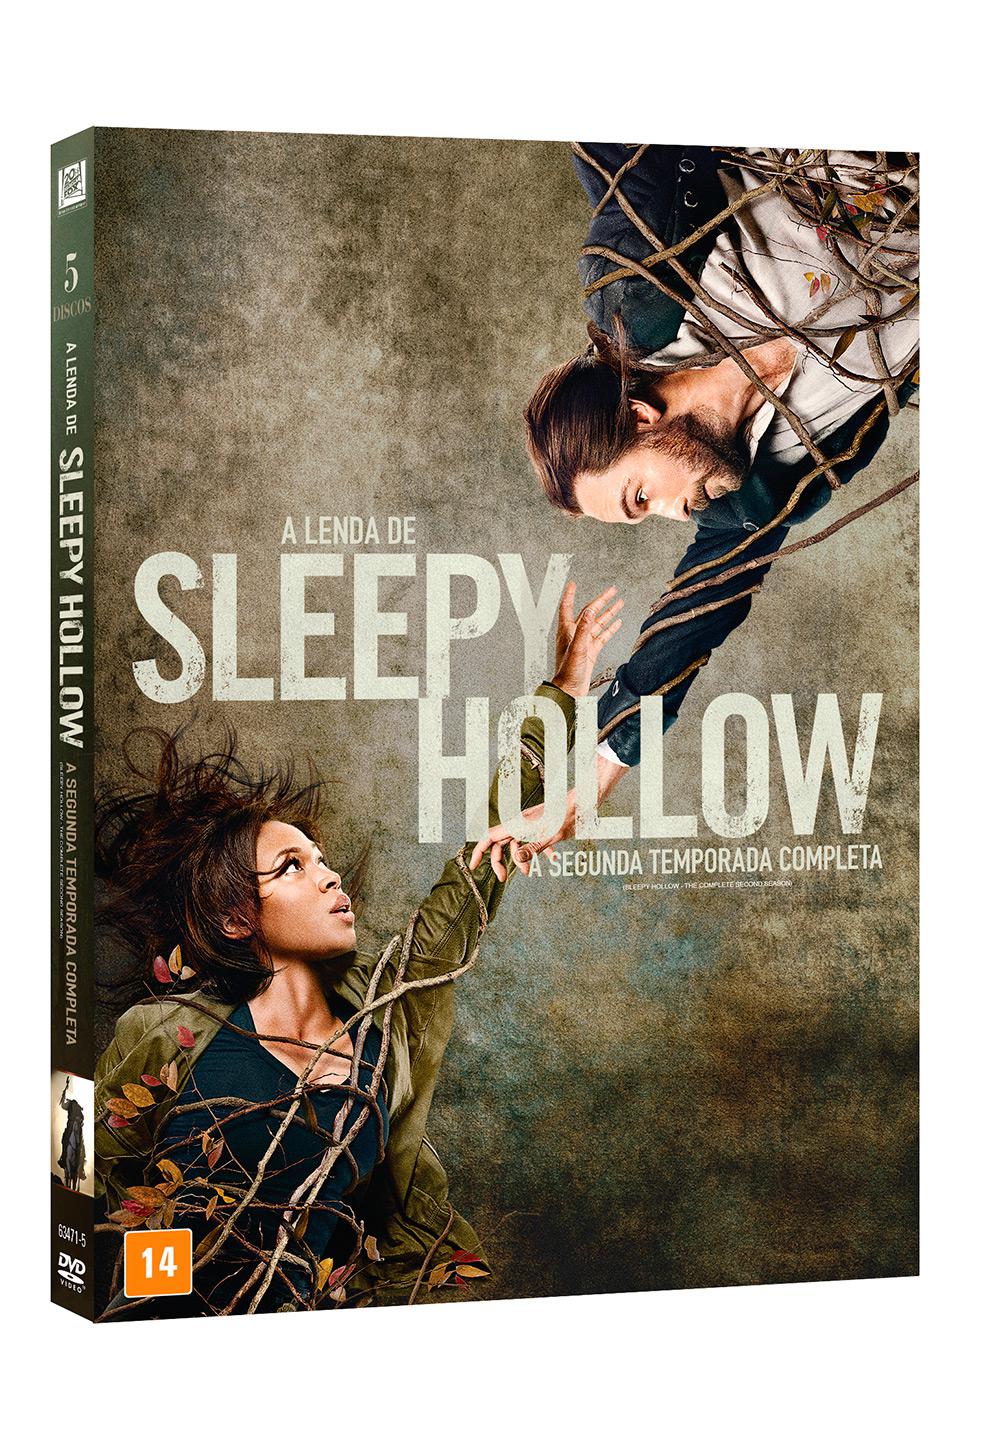 DVD - A Lenda de Sleepy Hollow - 2ª Temporada (5 Discos) é bom? Vale a pena?